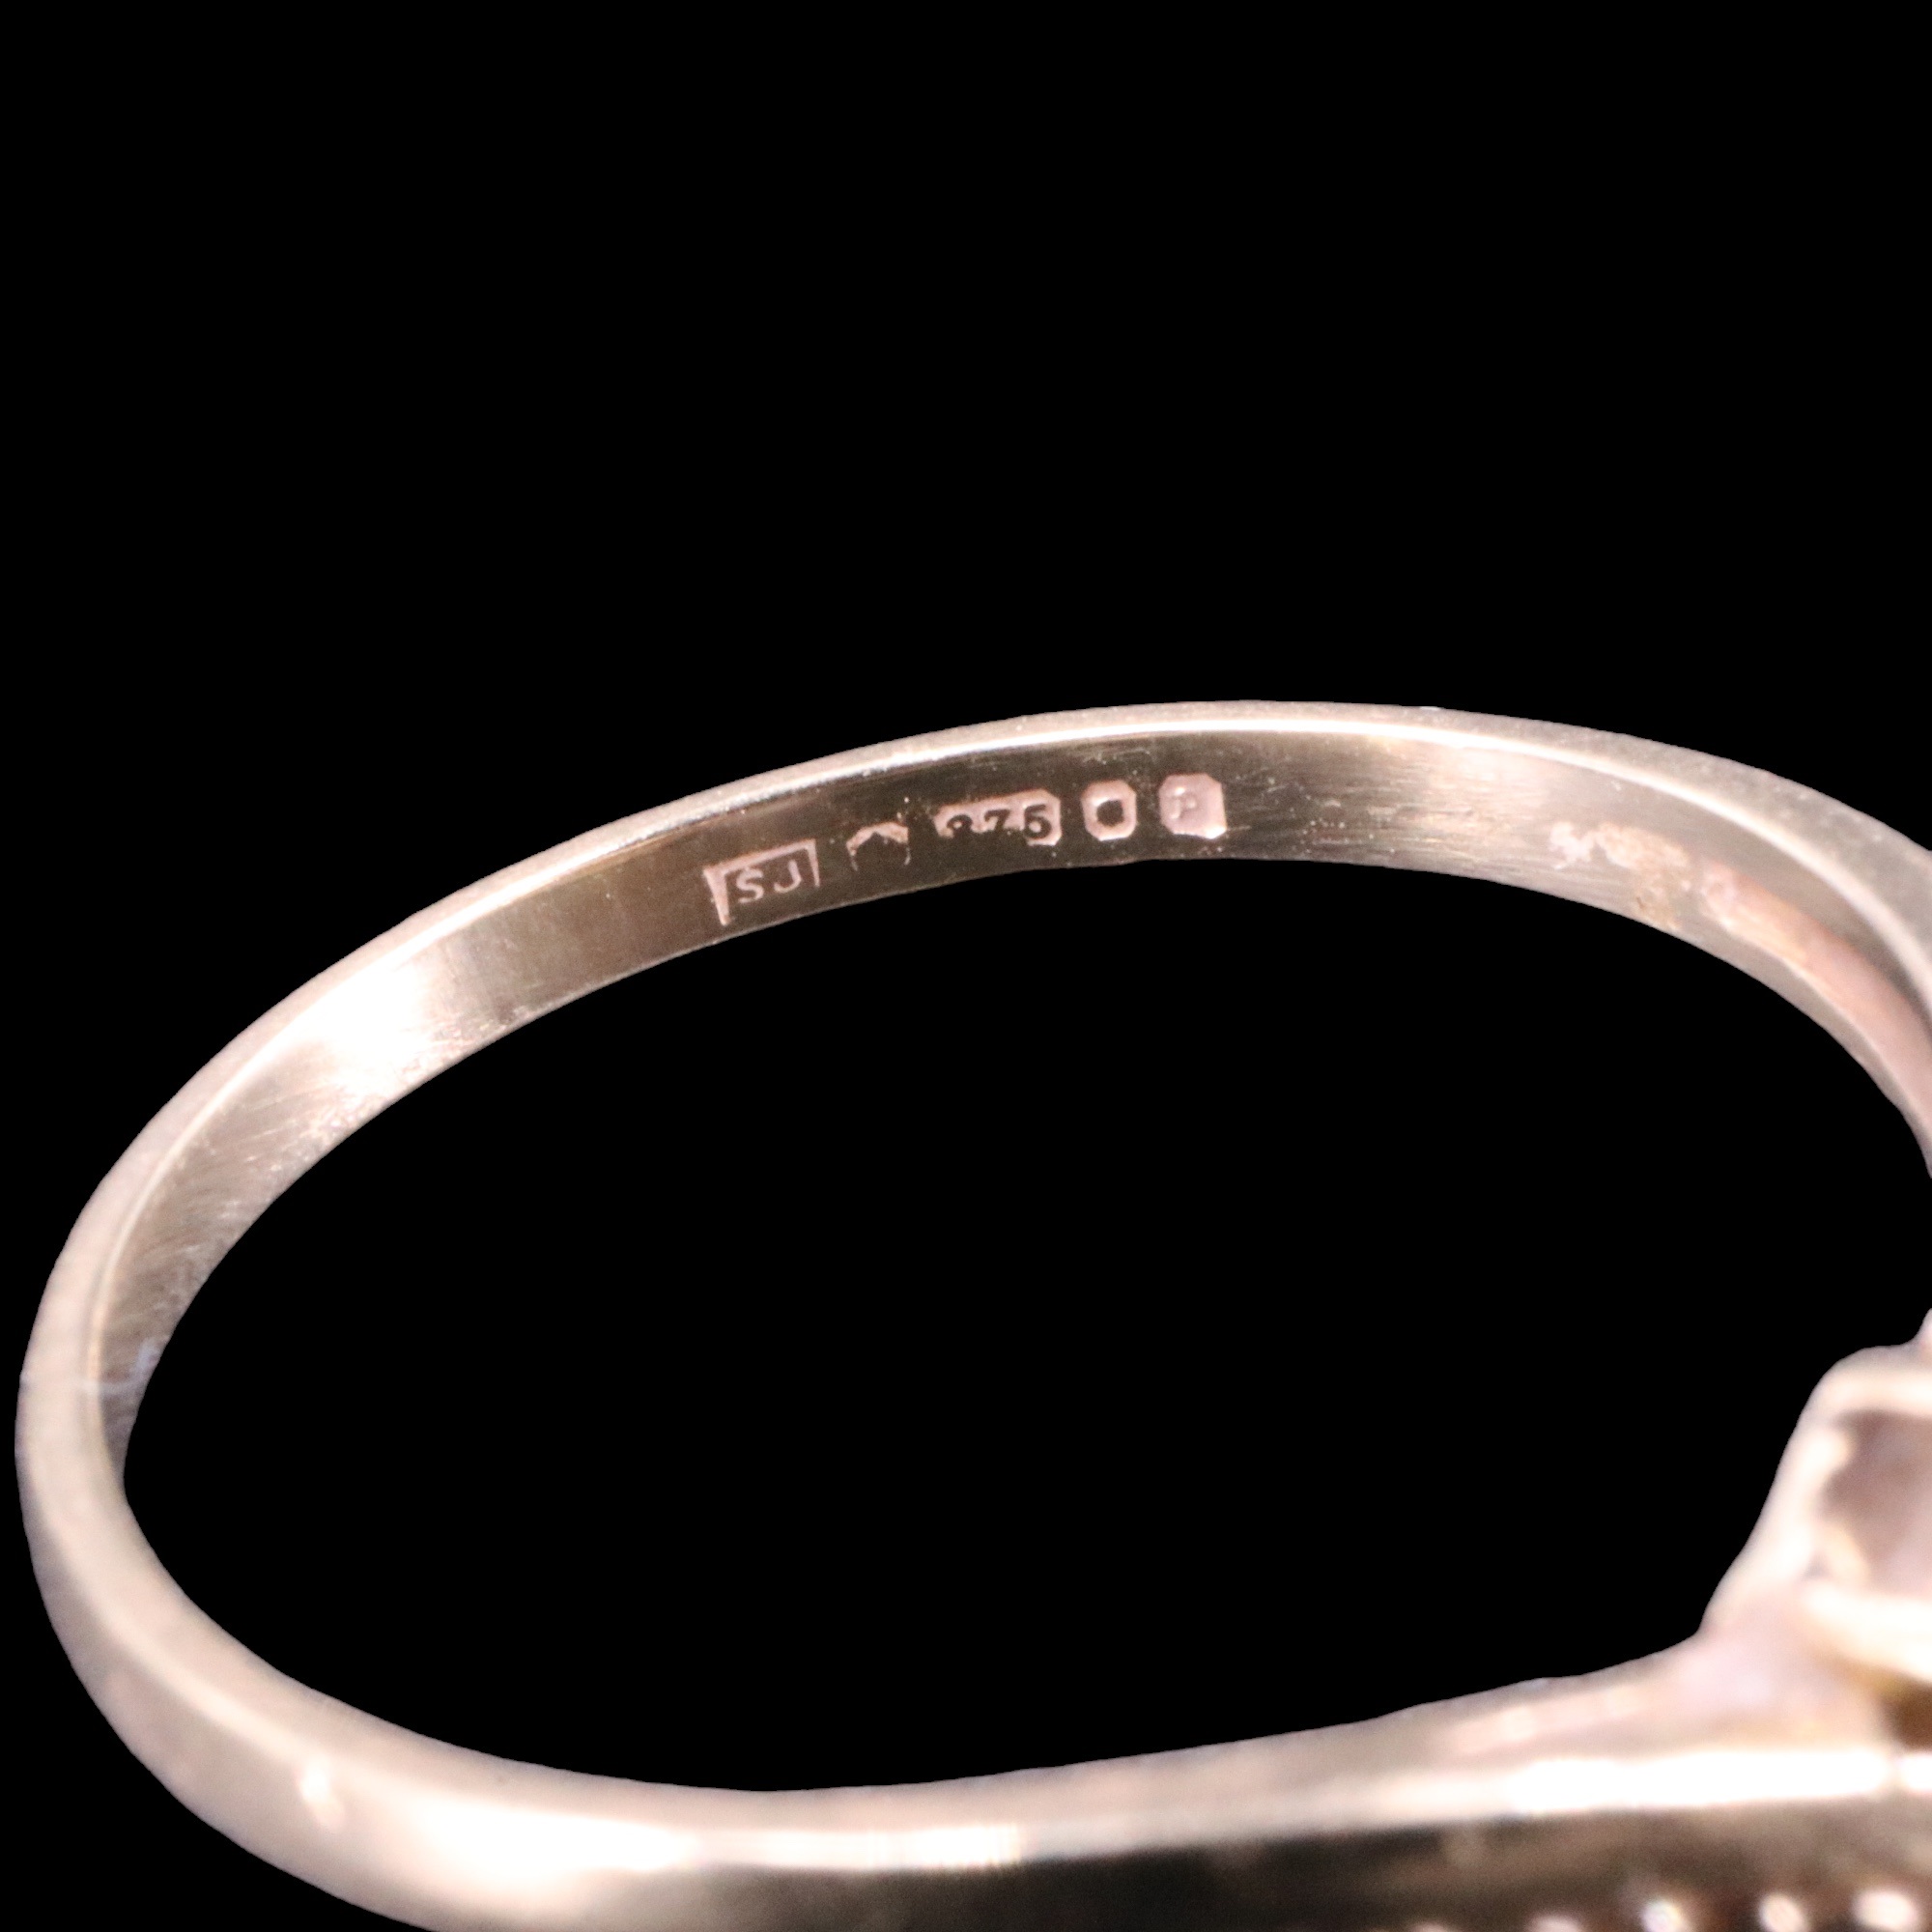 A garnet-set 9 ct gold wishbone ring, N, 1.3 g - Image 4 of 4